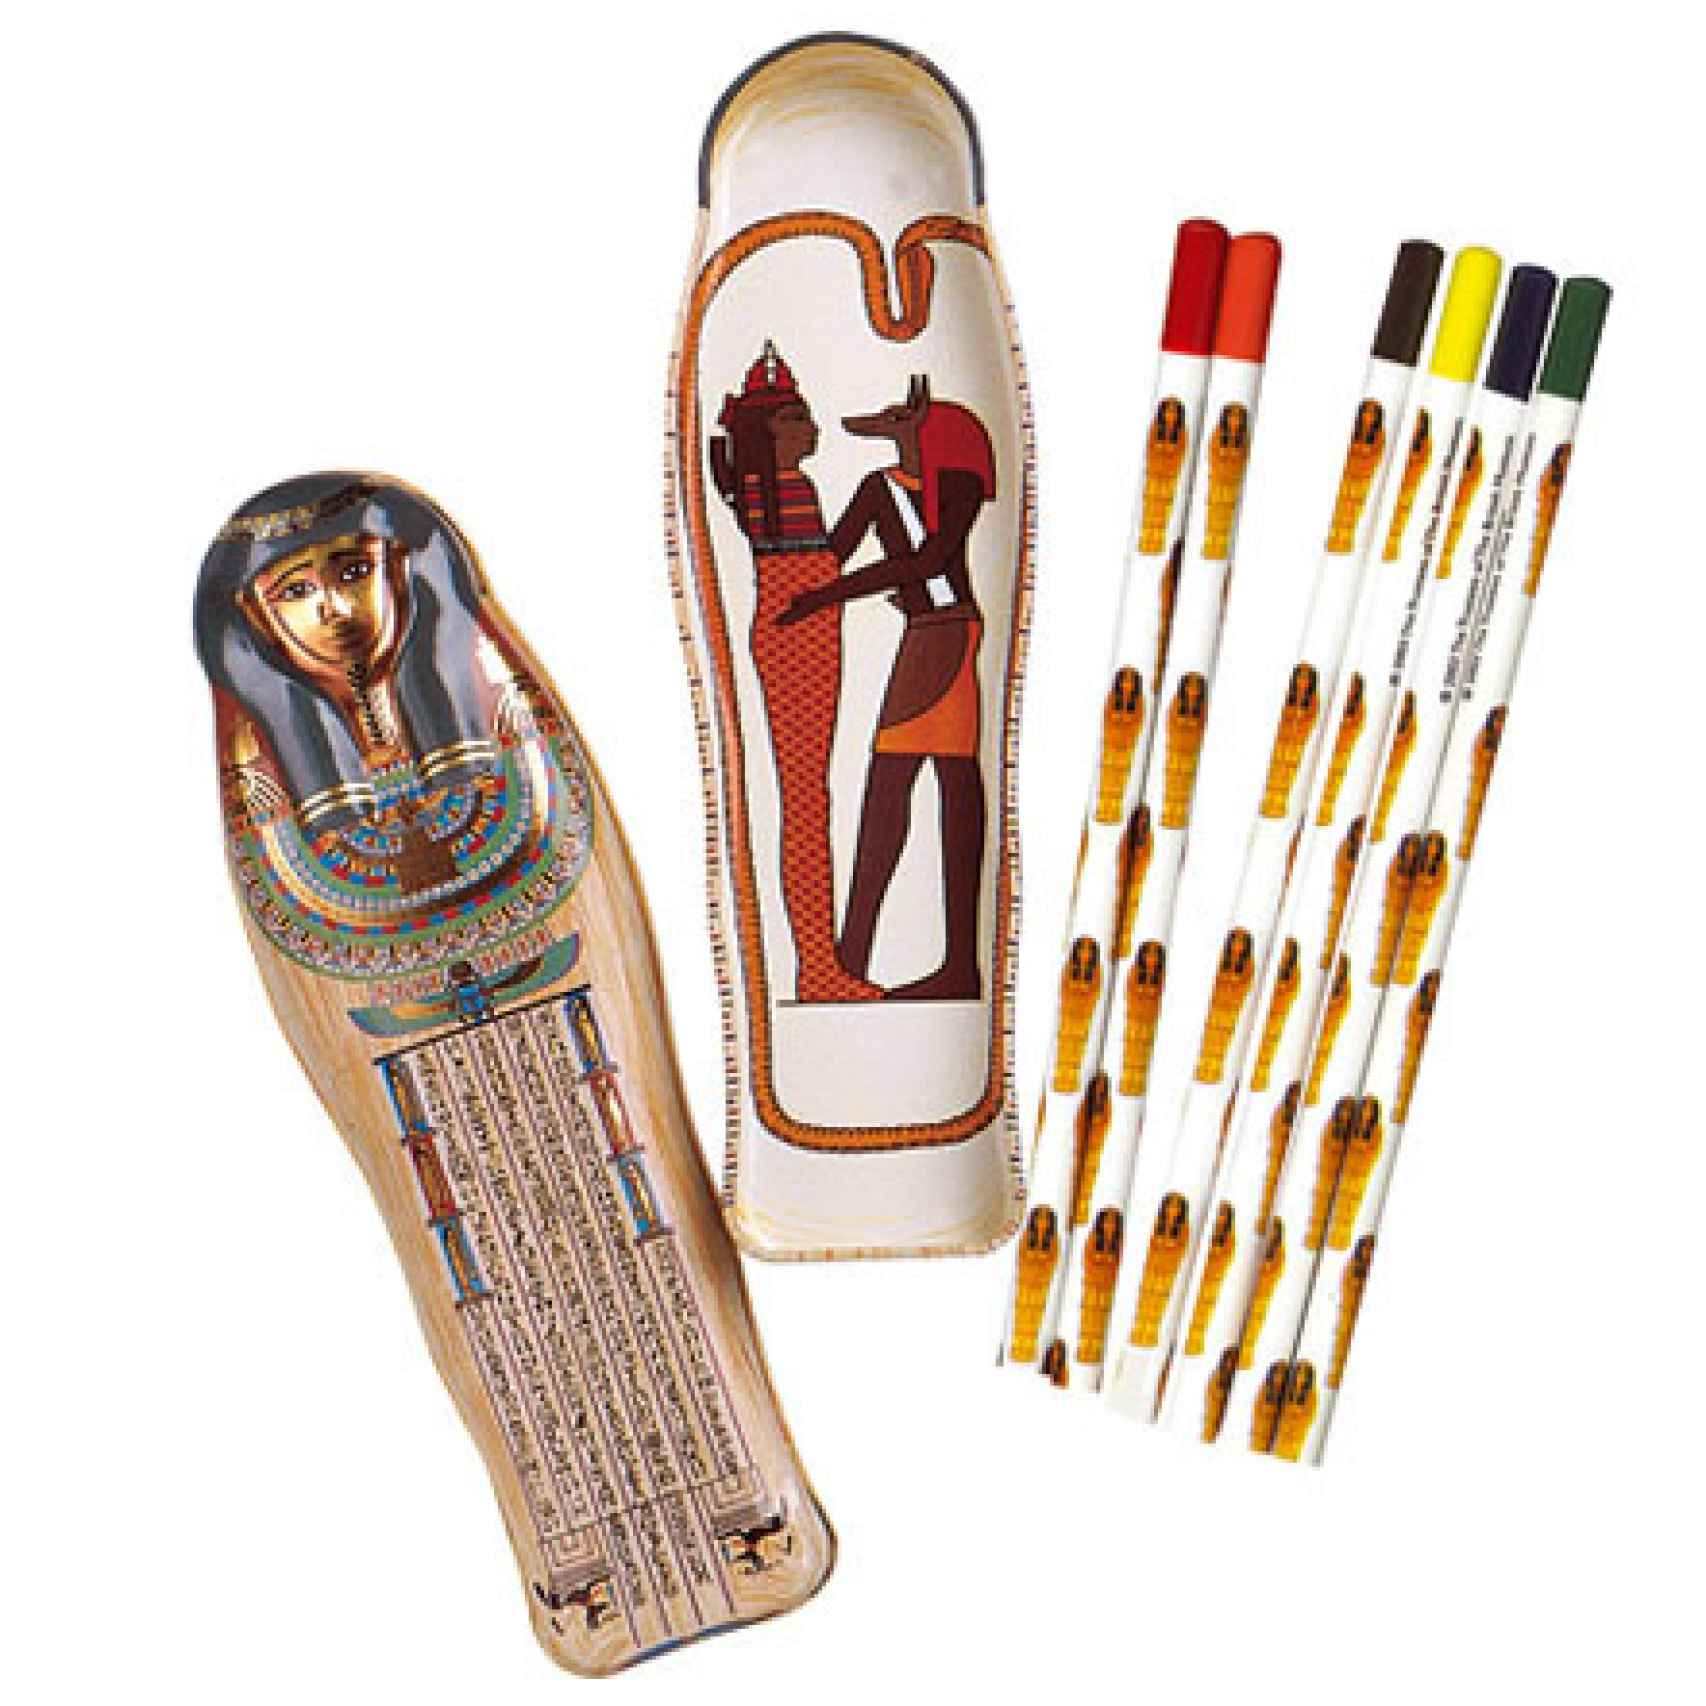 La momia estuche para lapiceros del British Museum.